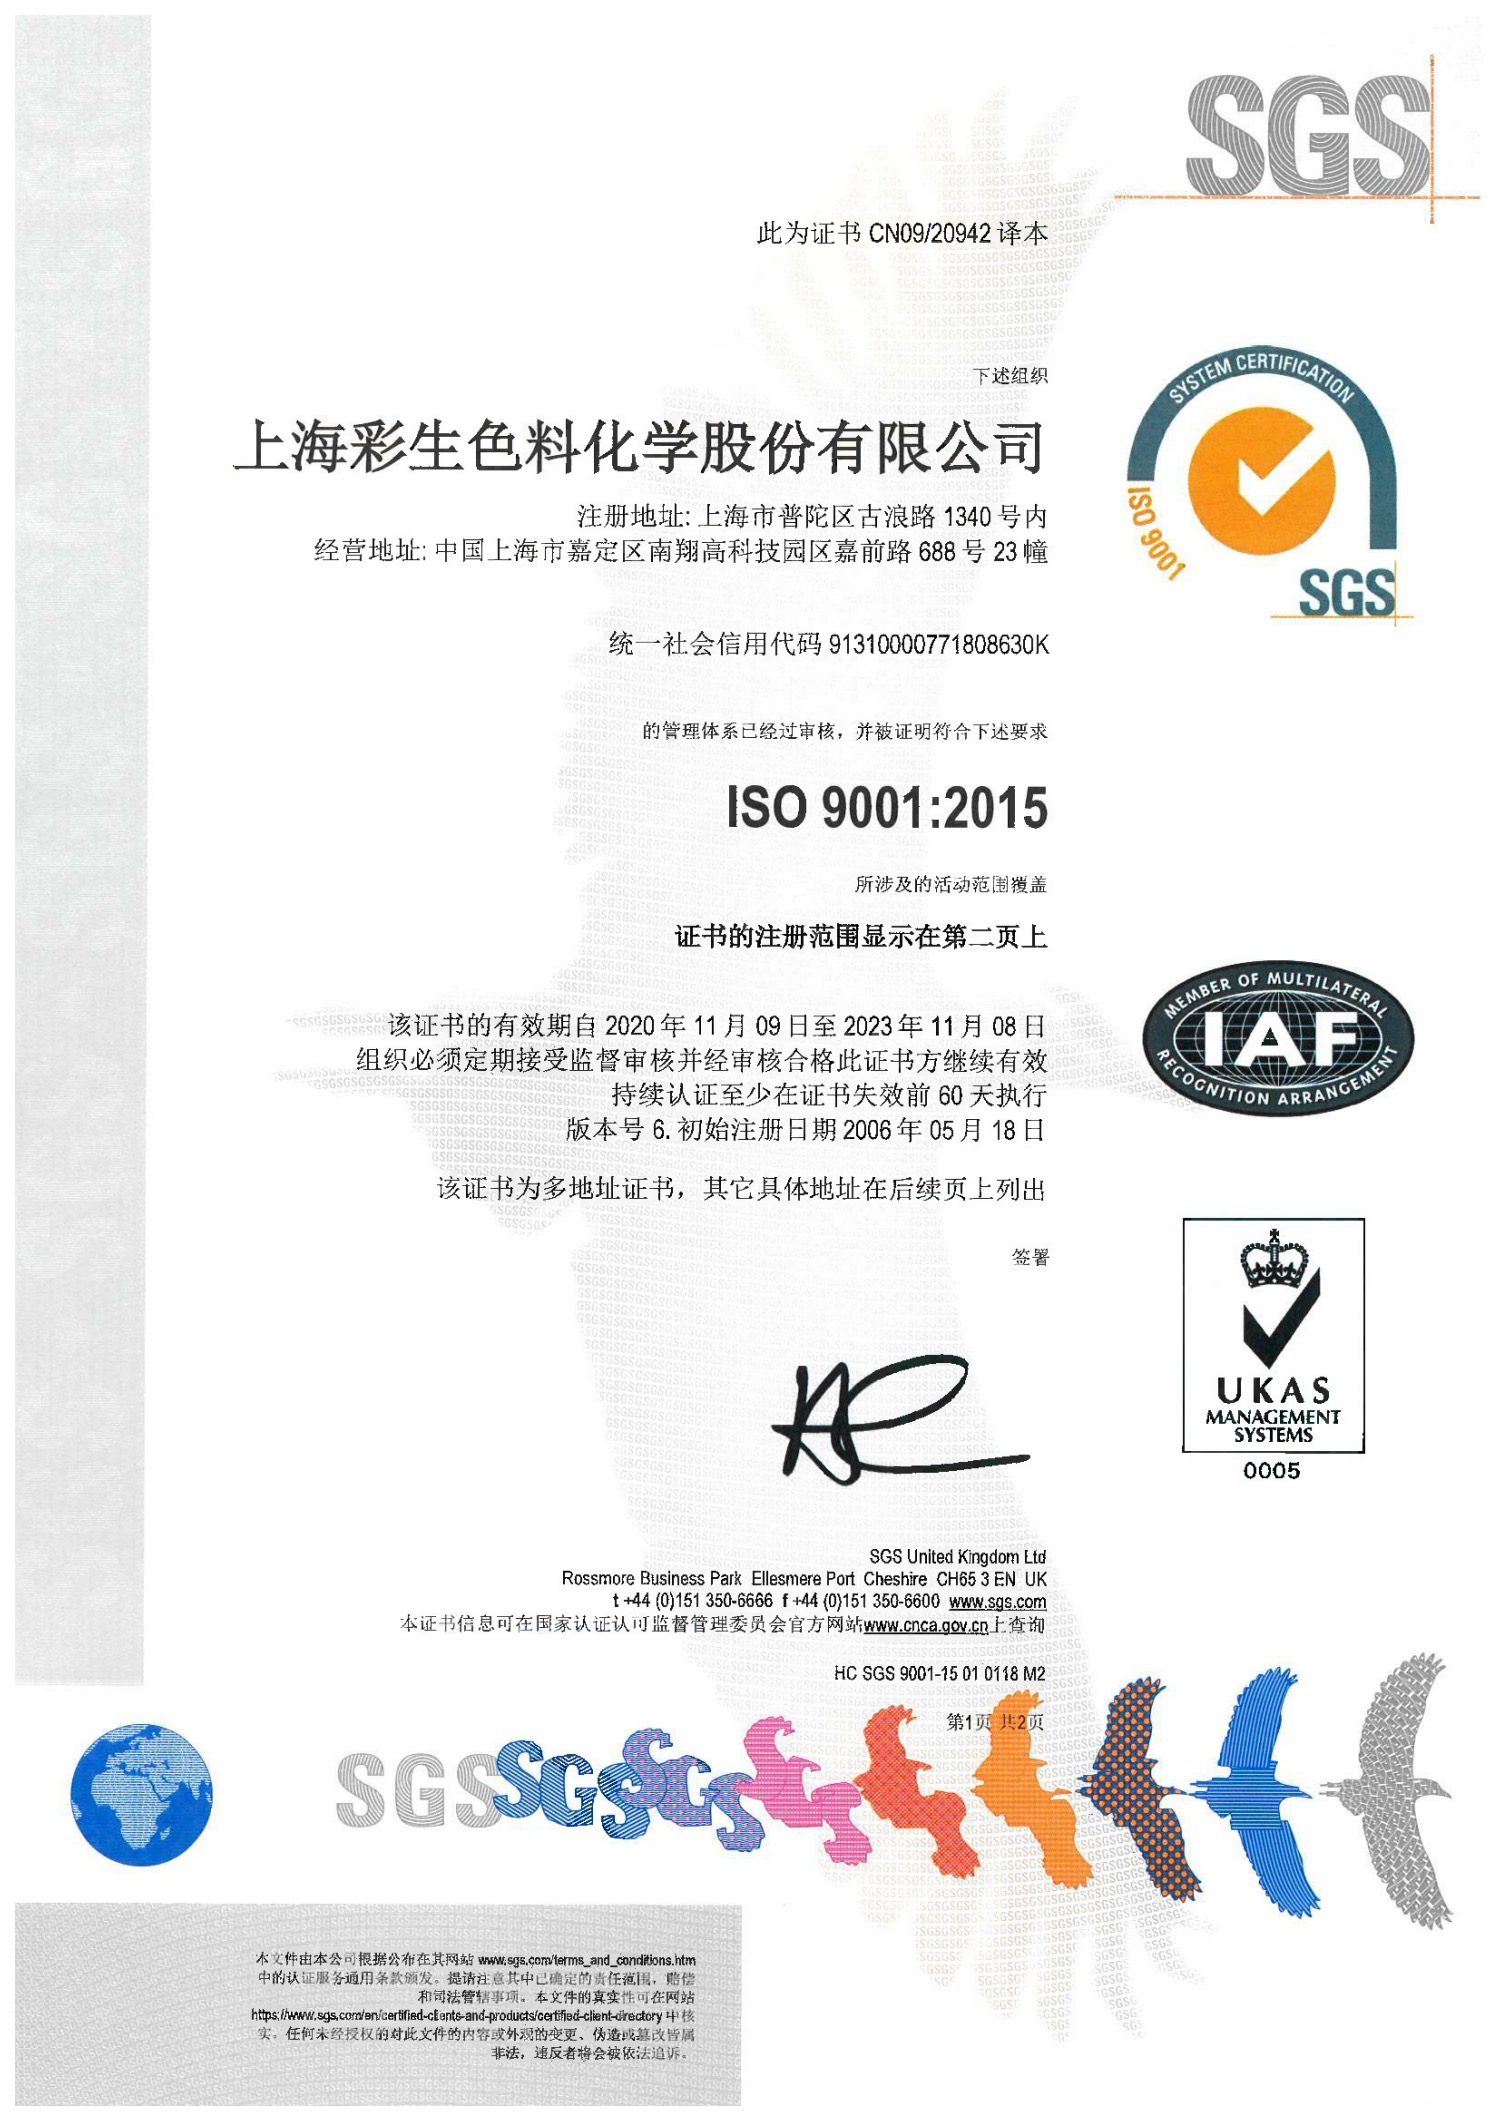 上海彩生ISO9001质量管理体系证书完成换证